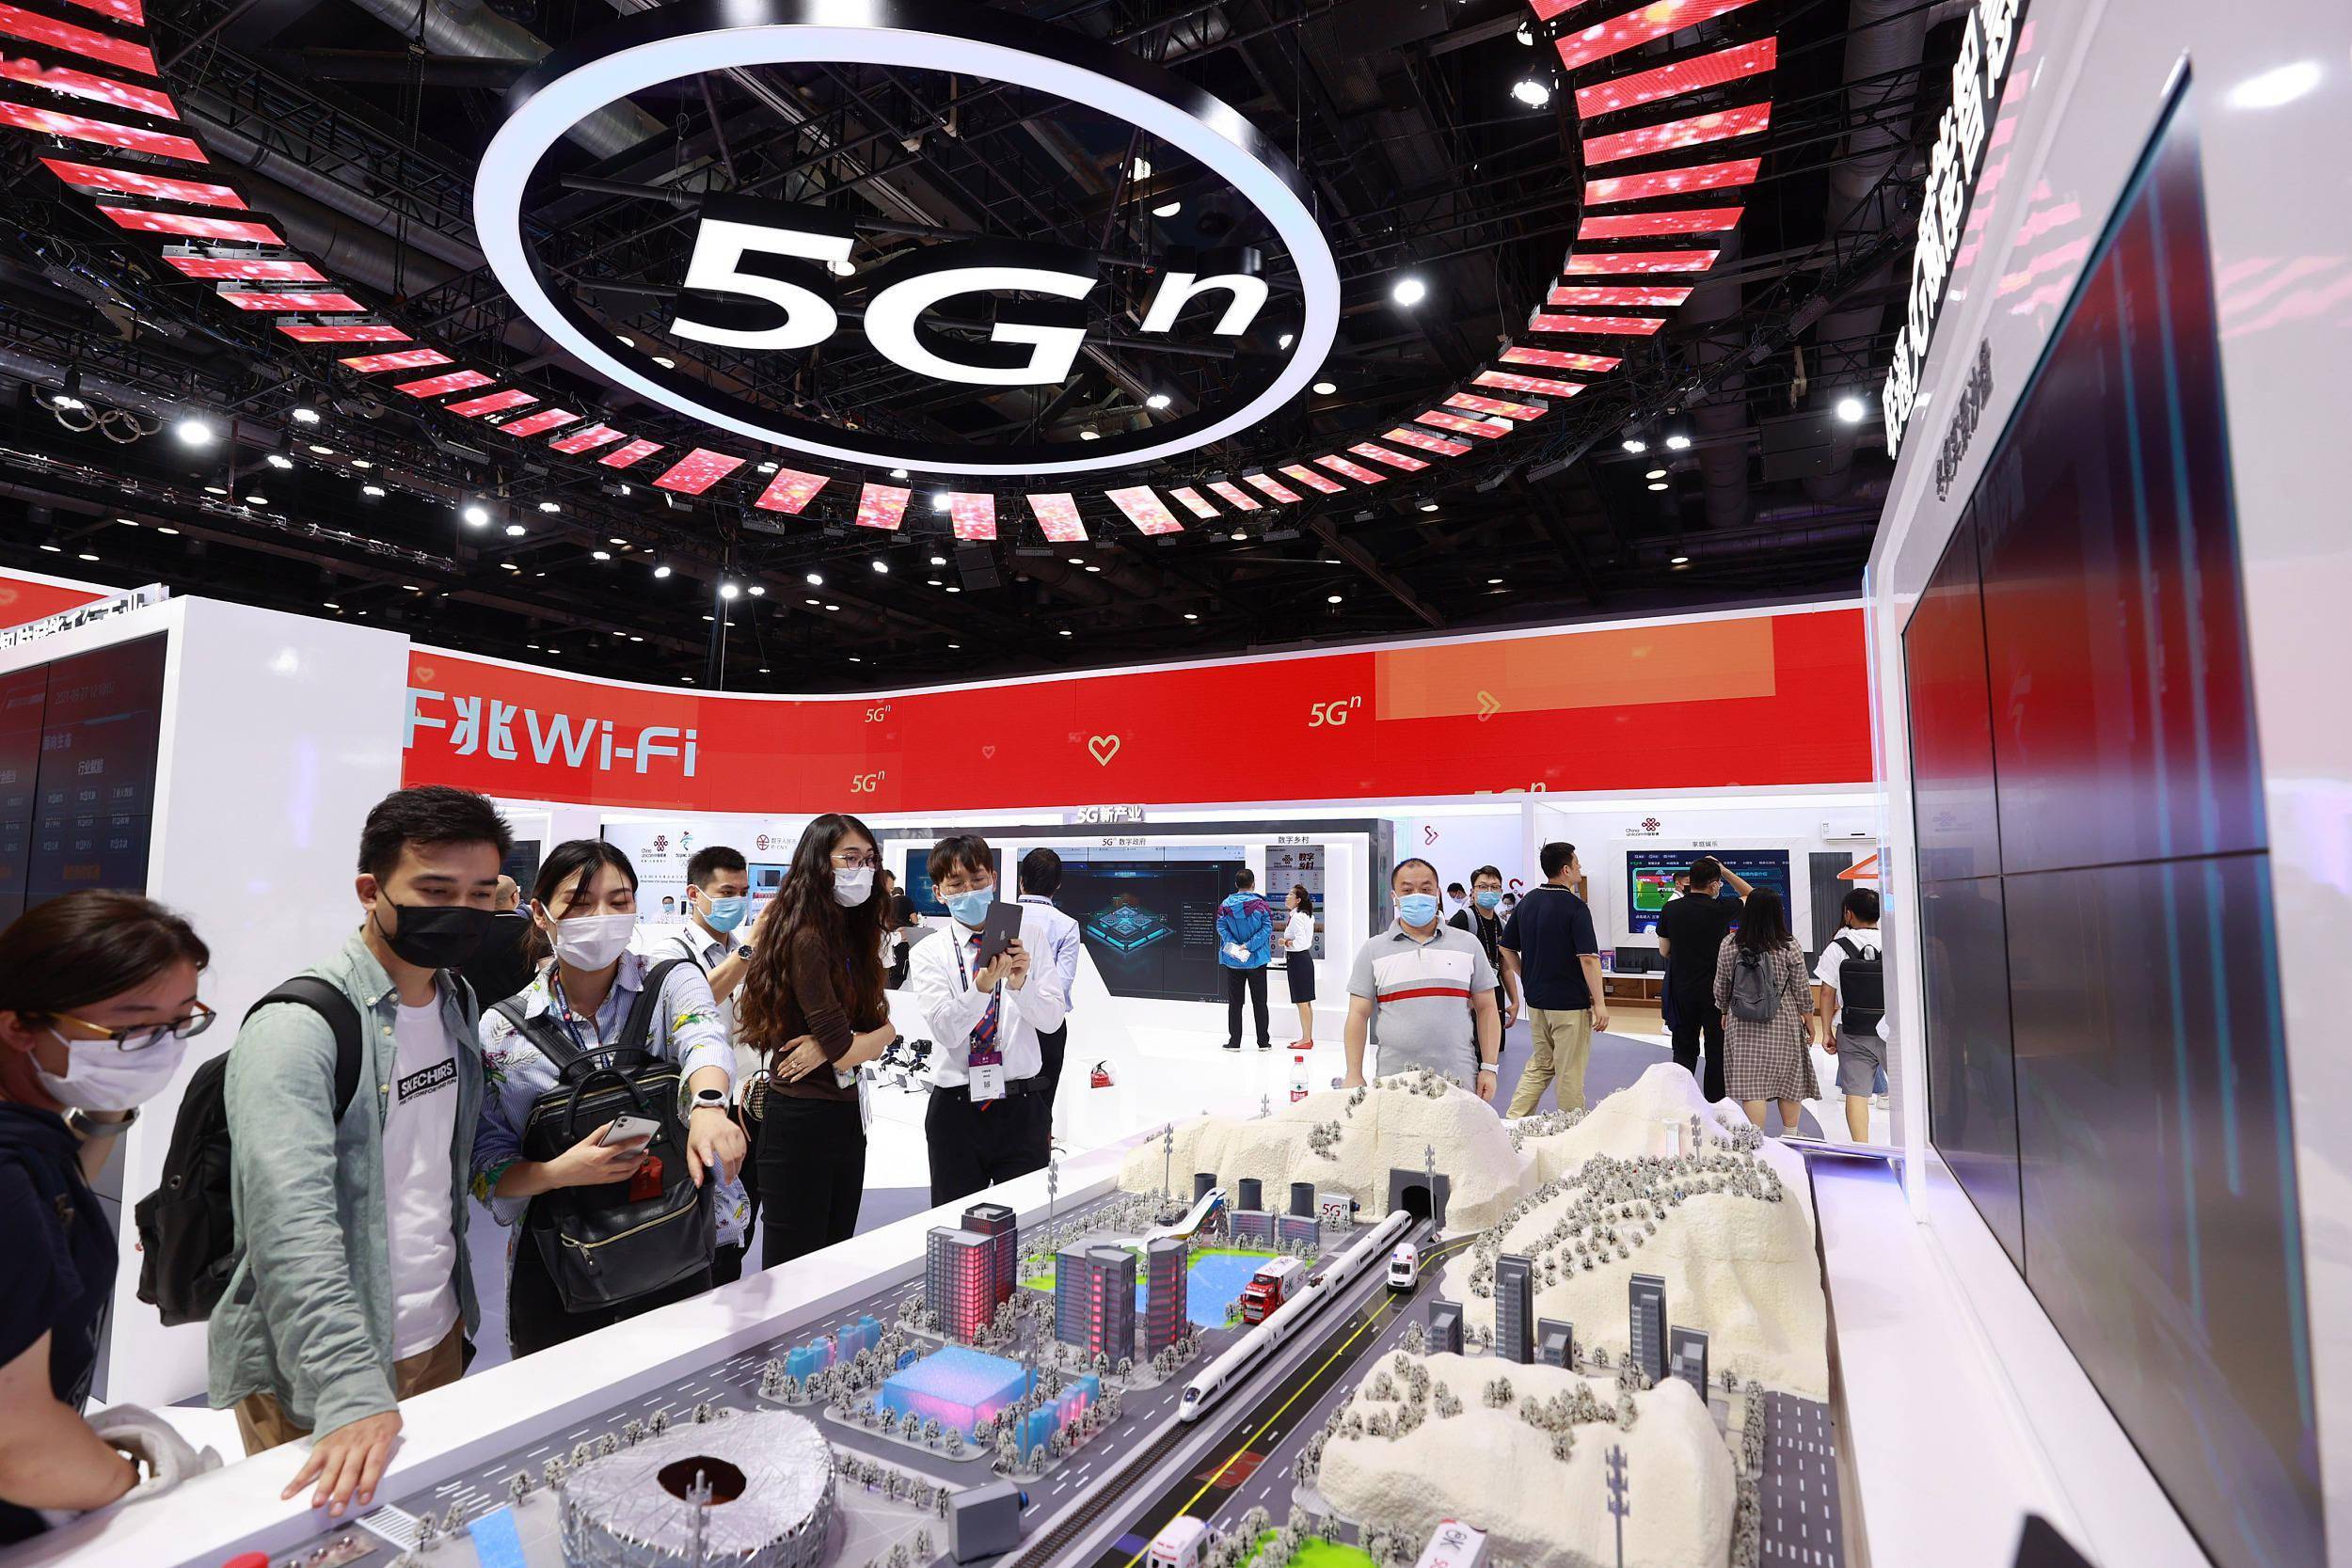 汉中 5G 网络建设滞后，市民期待 带来的变化  第3张